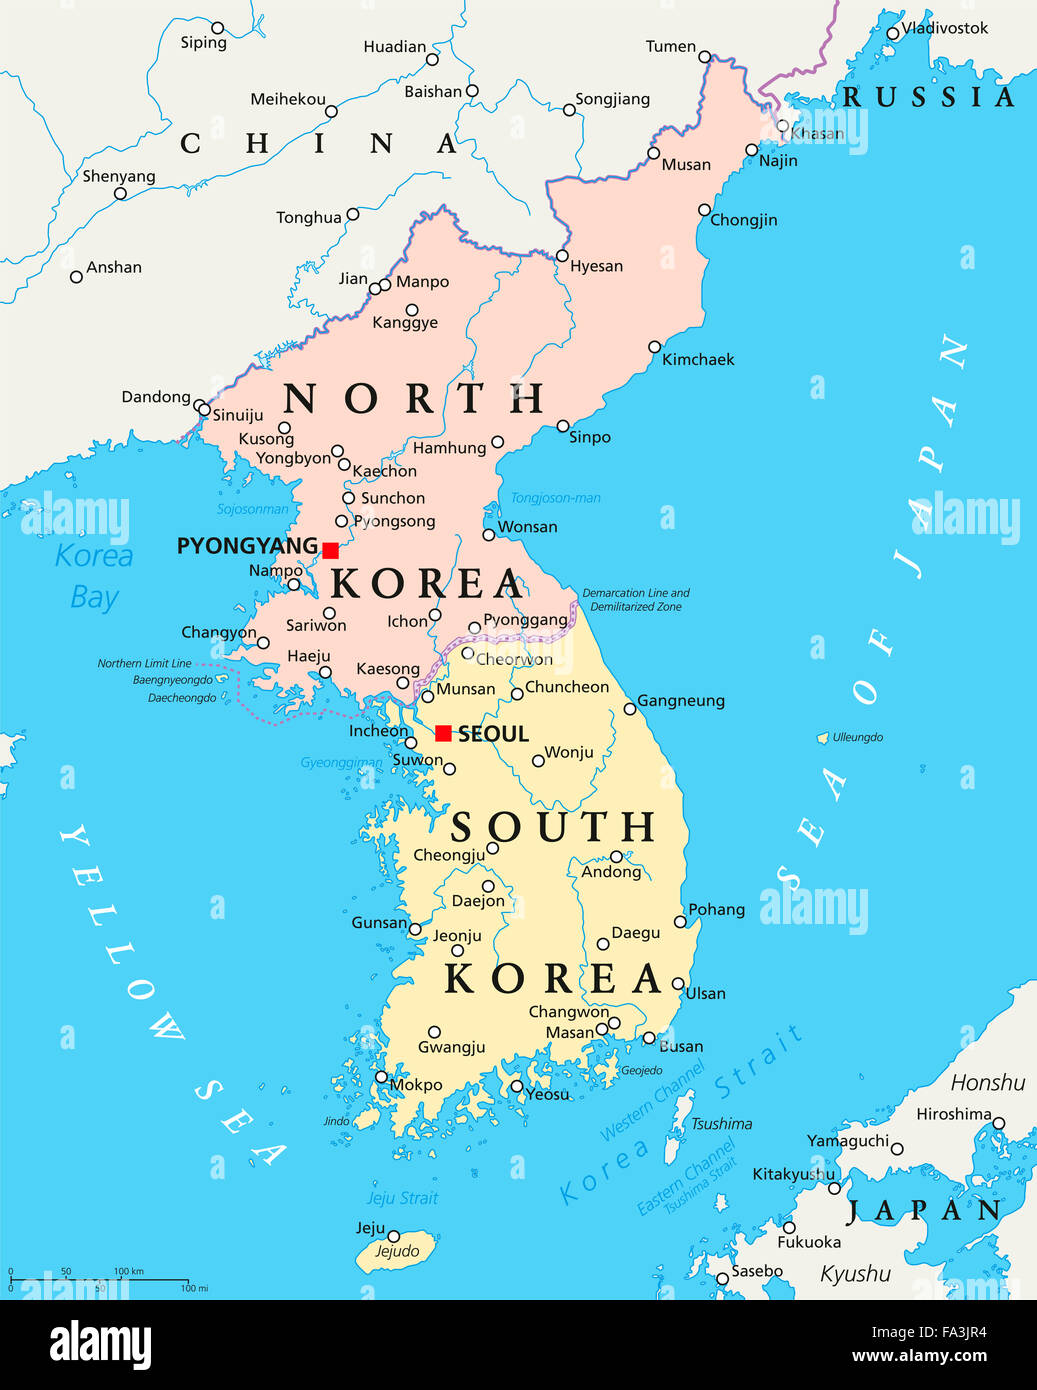 Corea del Norte, Corea del Sur mapa político con capiteles Pyongyang y Seúl. Península de Corea, las fronteras nacionales, ciudades importantes. Foto de stock